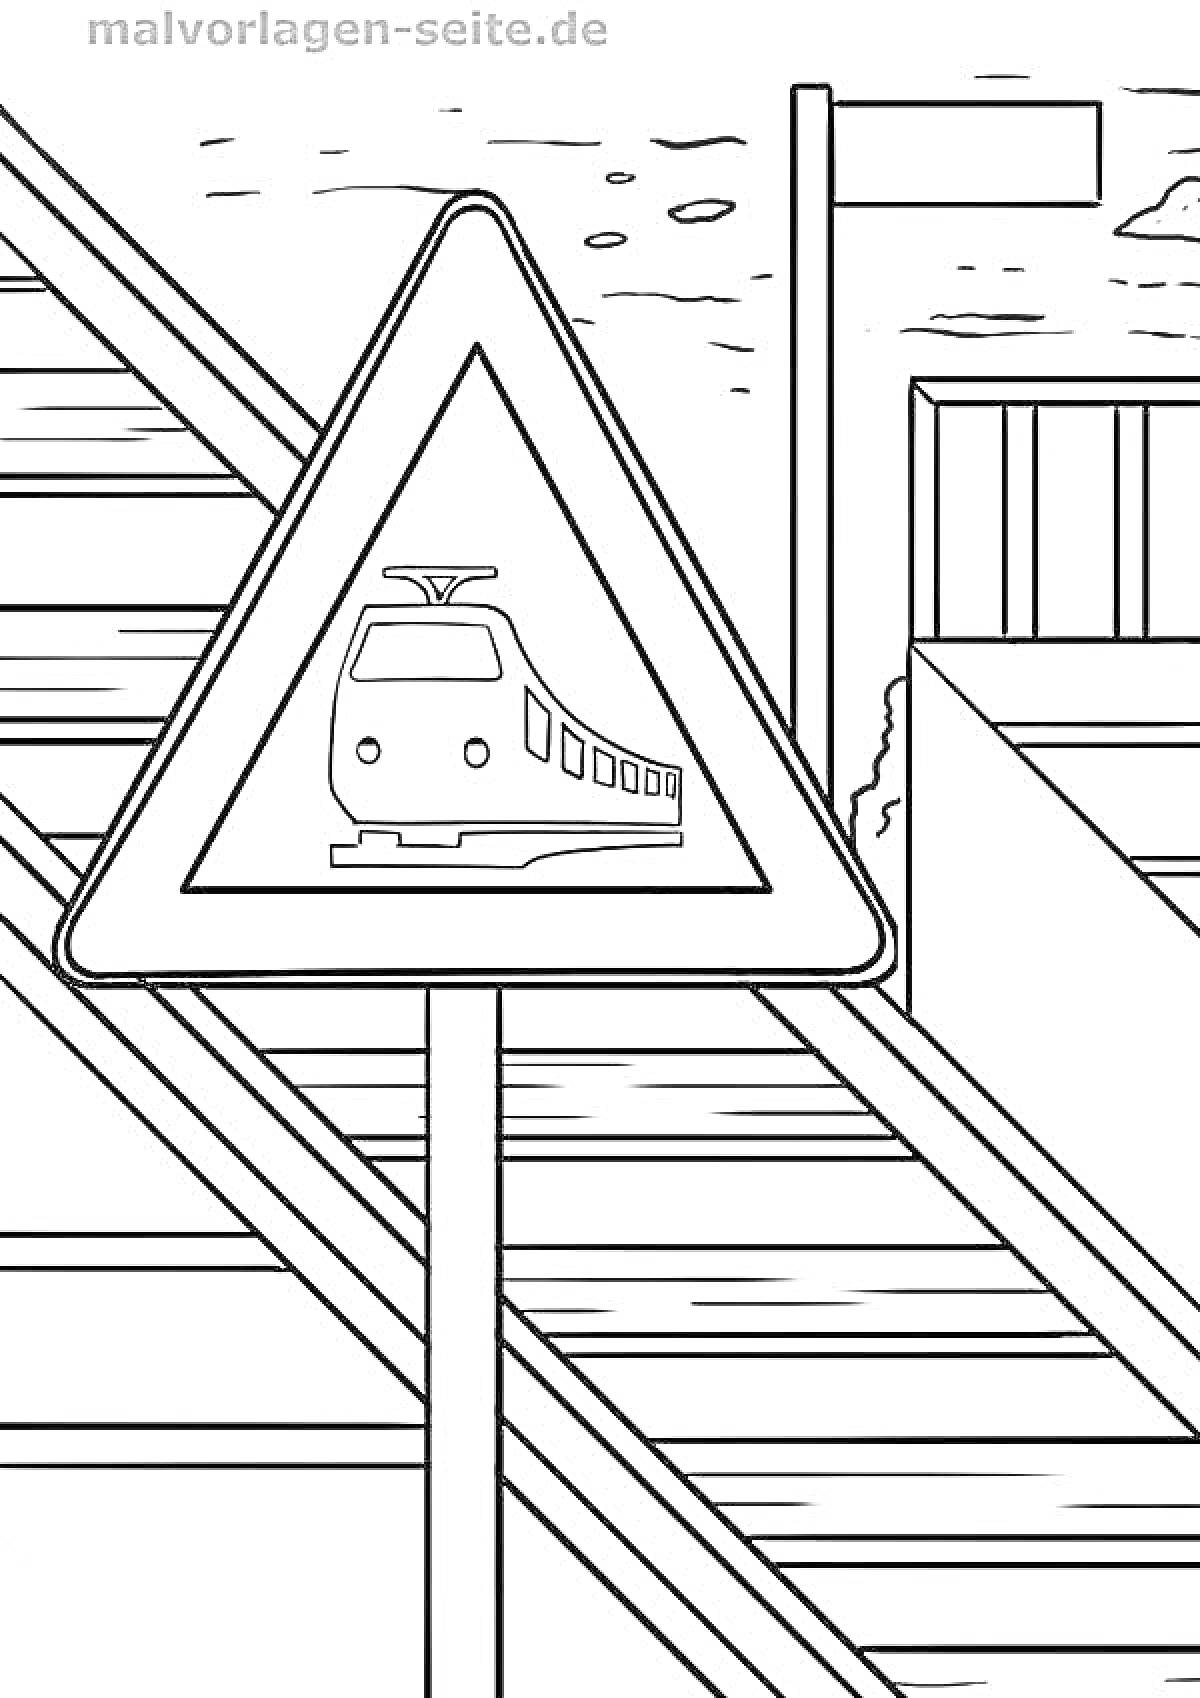 Железнодорожный переезд с предупреждающим знаком и барьером на фоне